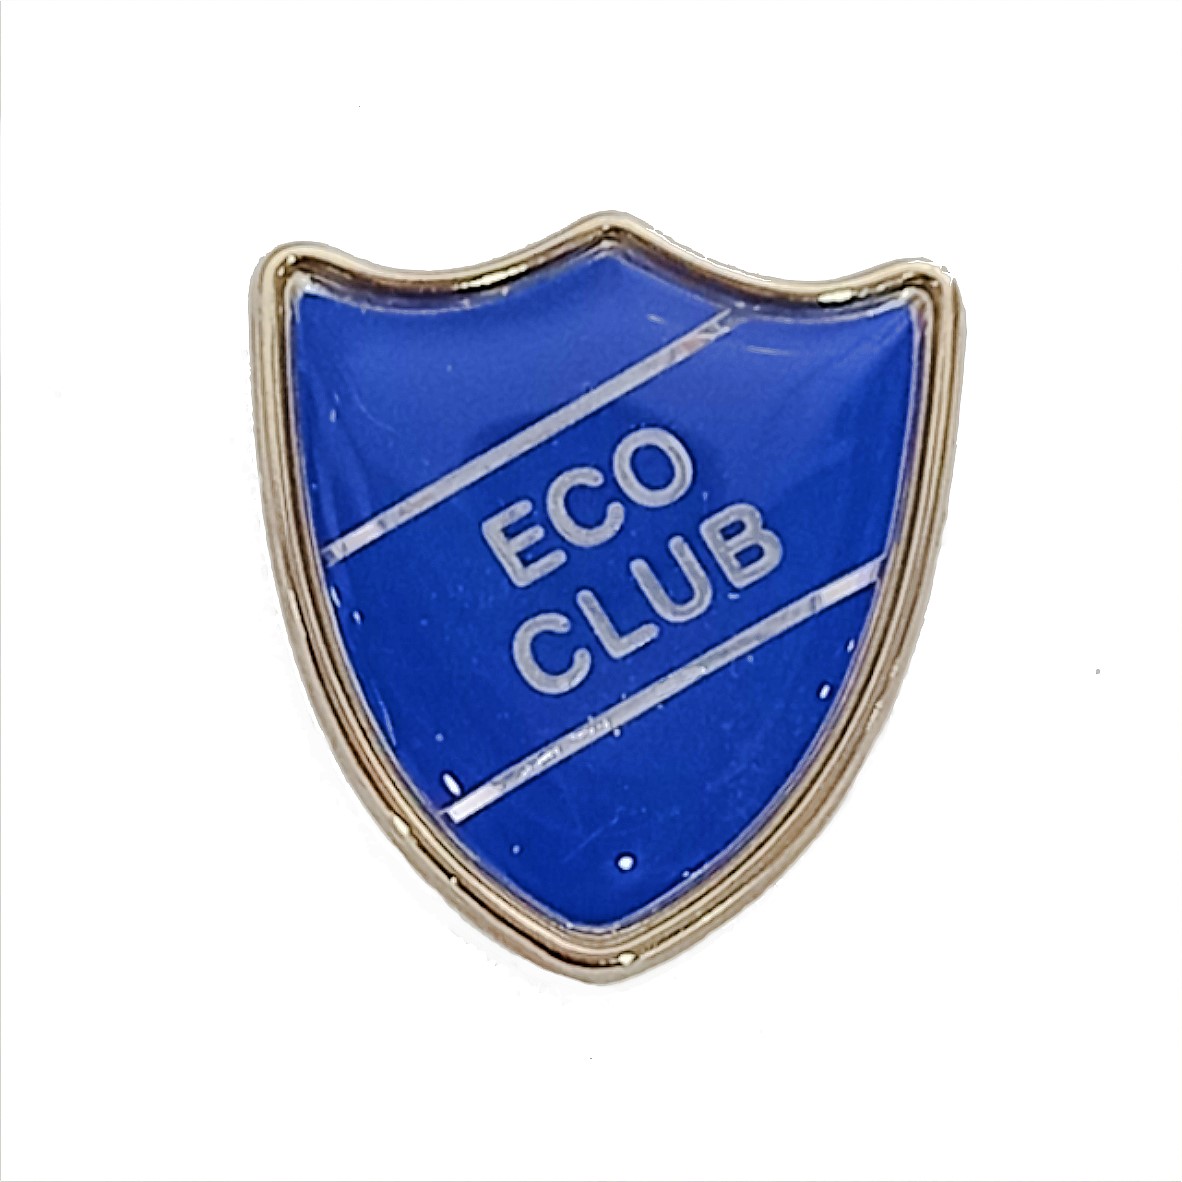 ECO CLUB shield badge